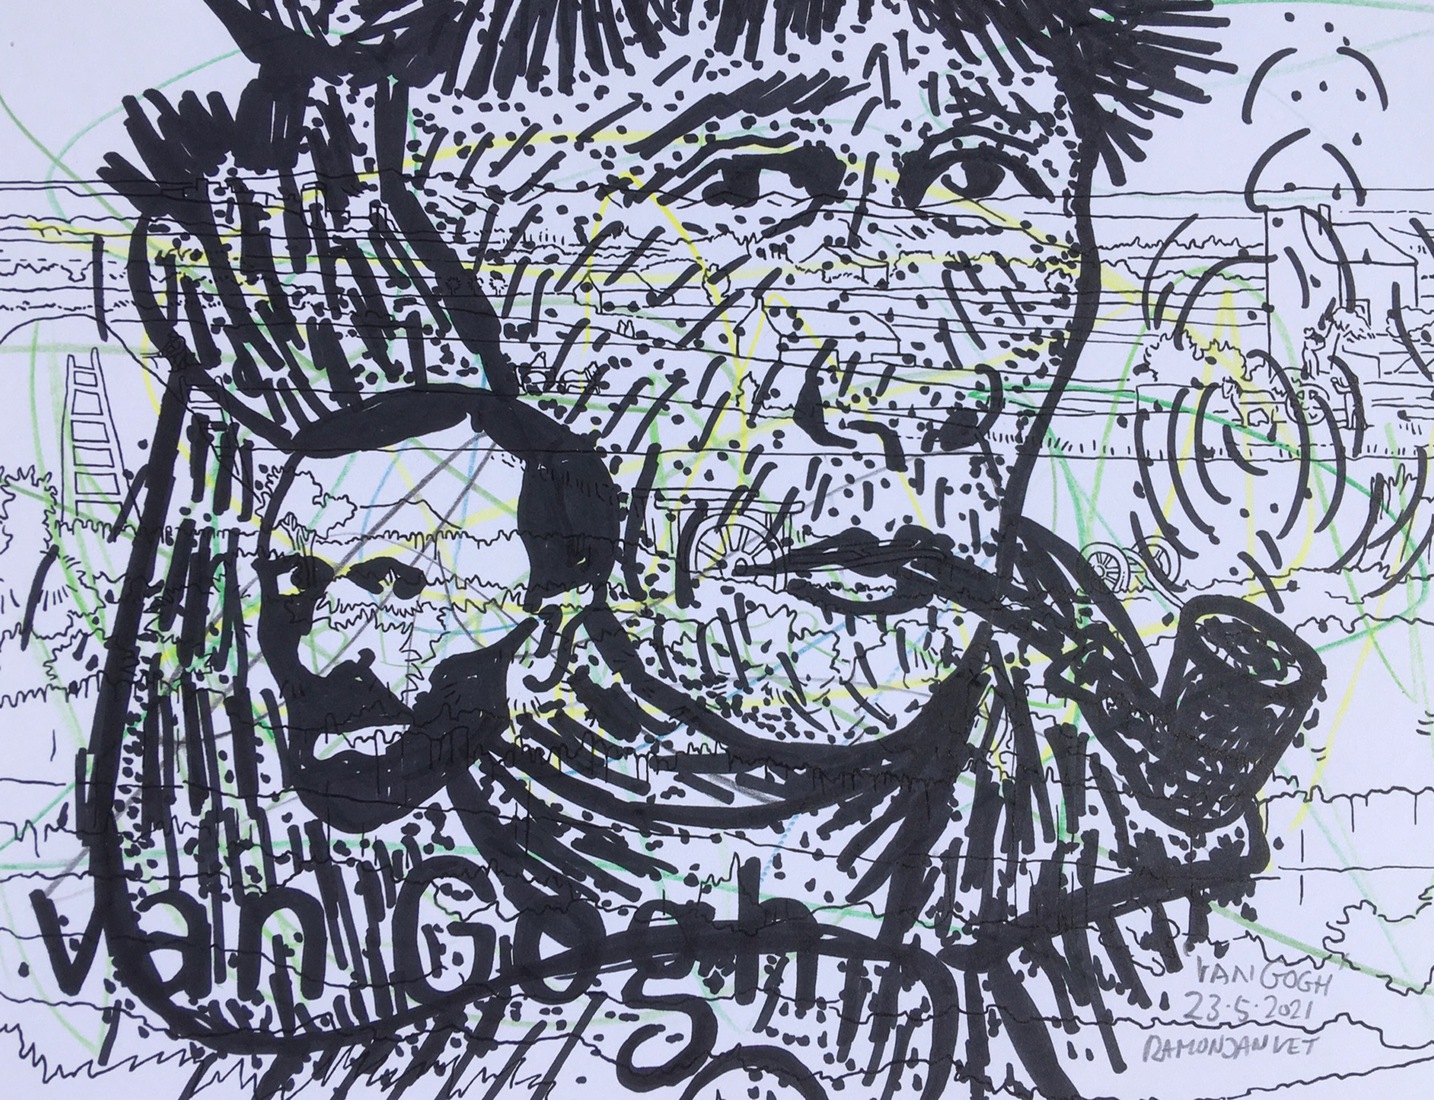 Vincent van Gogh (met verbonden oor)